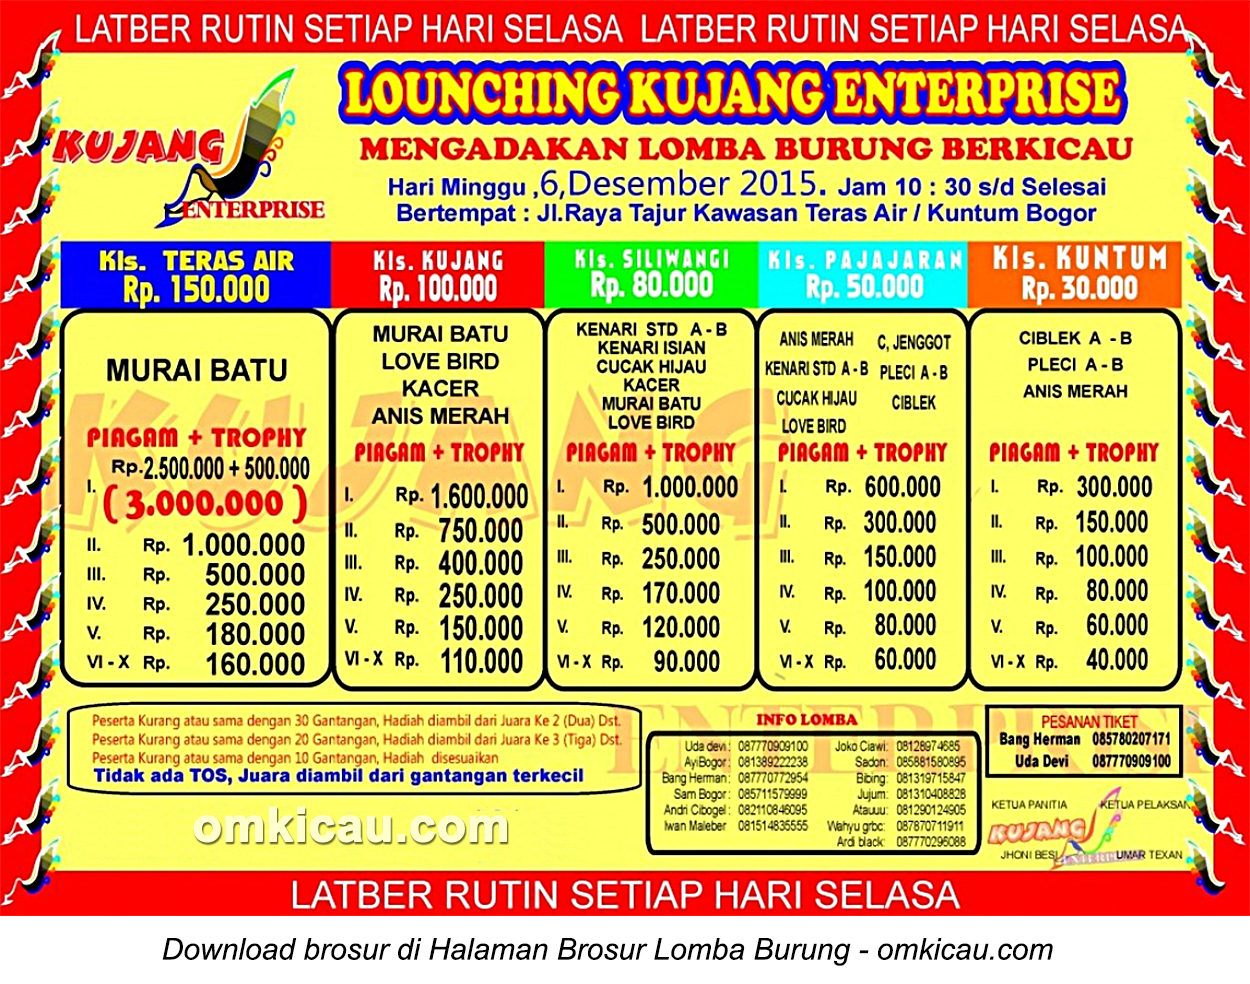 Brosur Lomba Burung Berkicau Launching Kujang Enterprise, Bogor, 6 Desember 2015